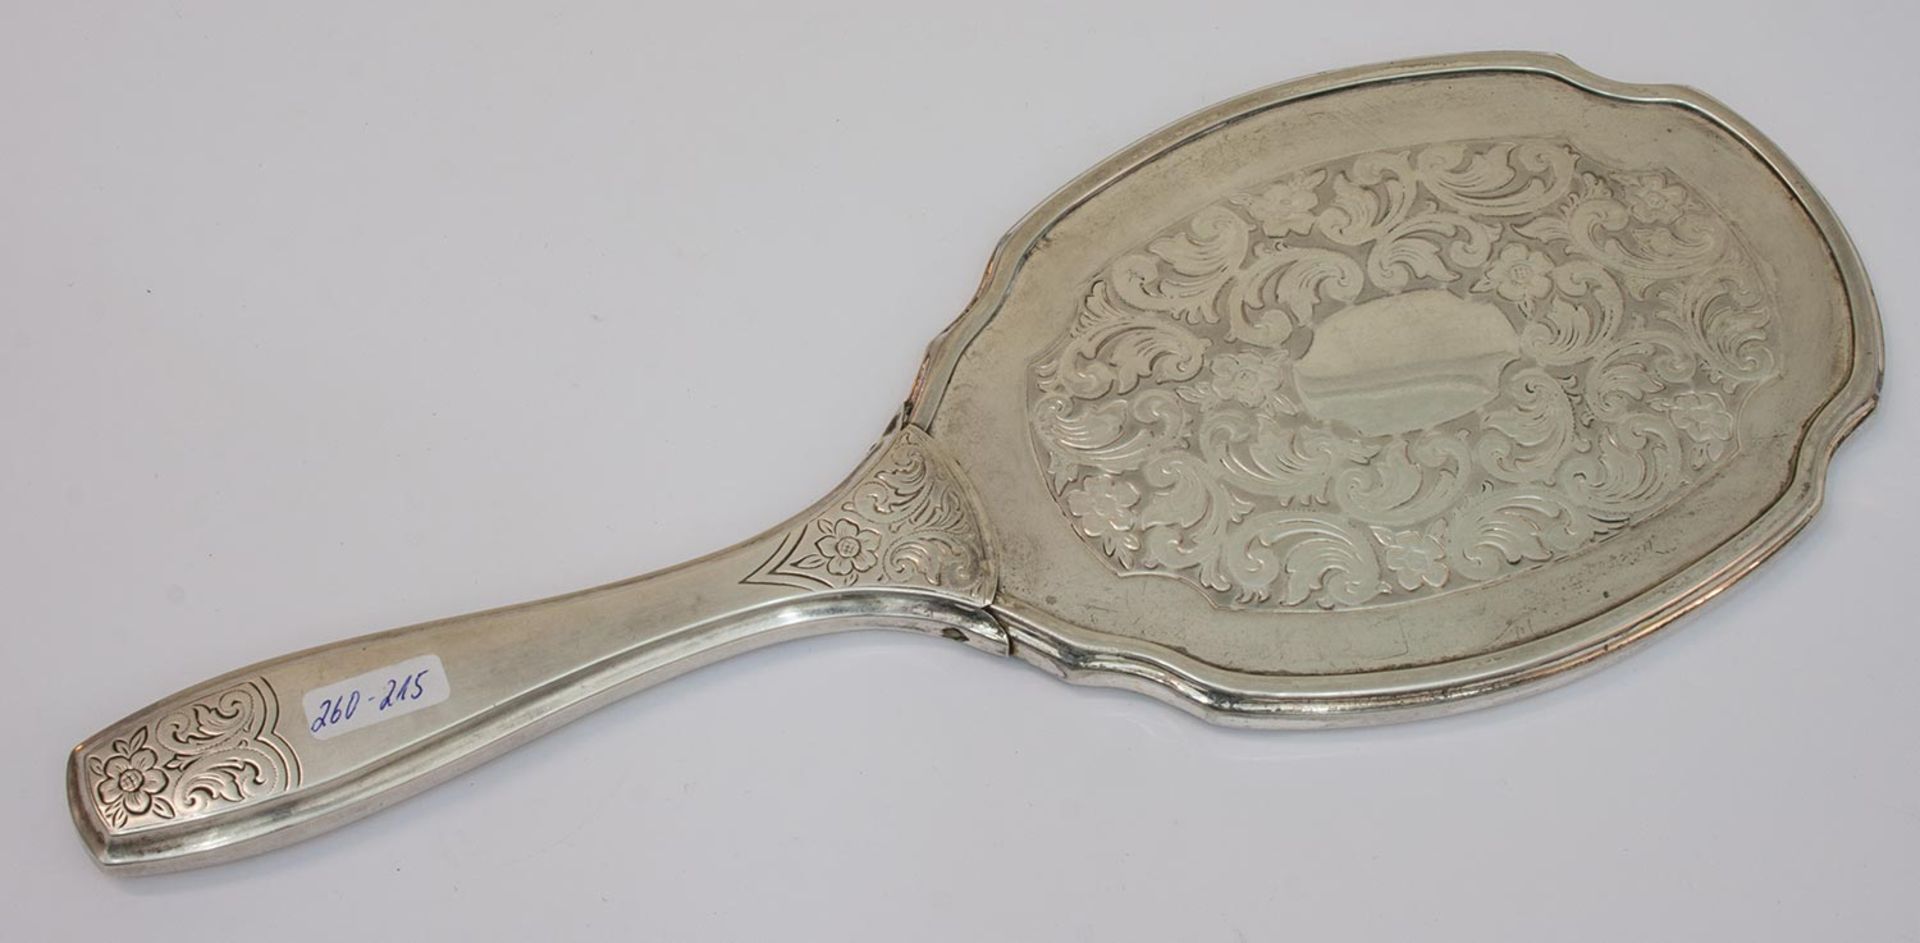 Handspiegelum 1920er Jahre, 835er Silber mit ziseliertem Rocaillendekor, L. 28 cmMindestpreis: 60